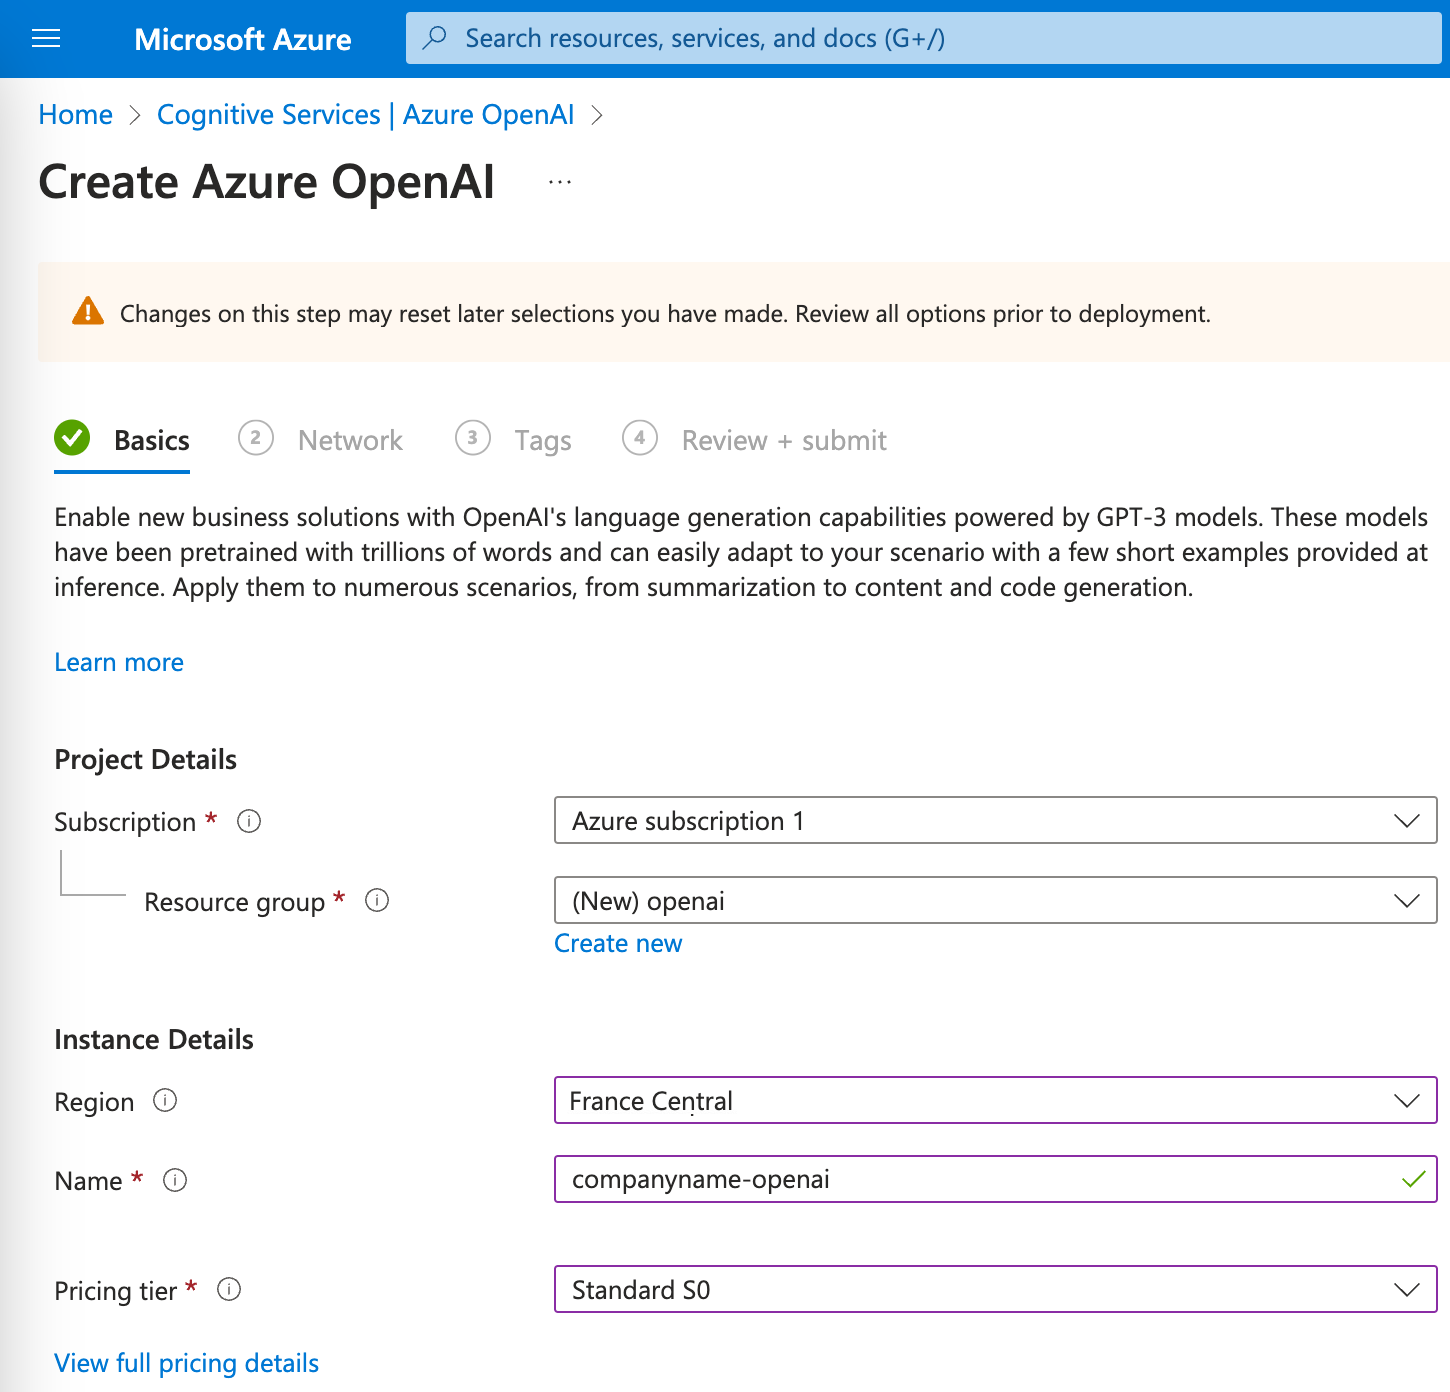 Create Azure OpenAI Basics